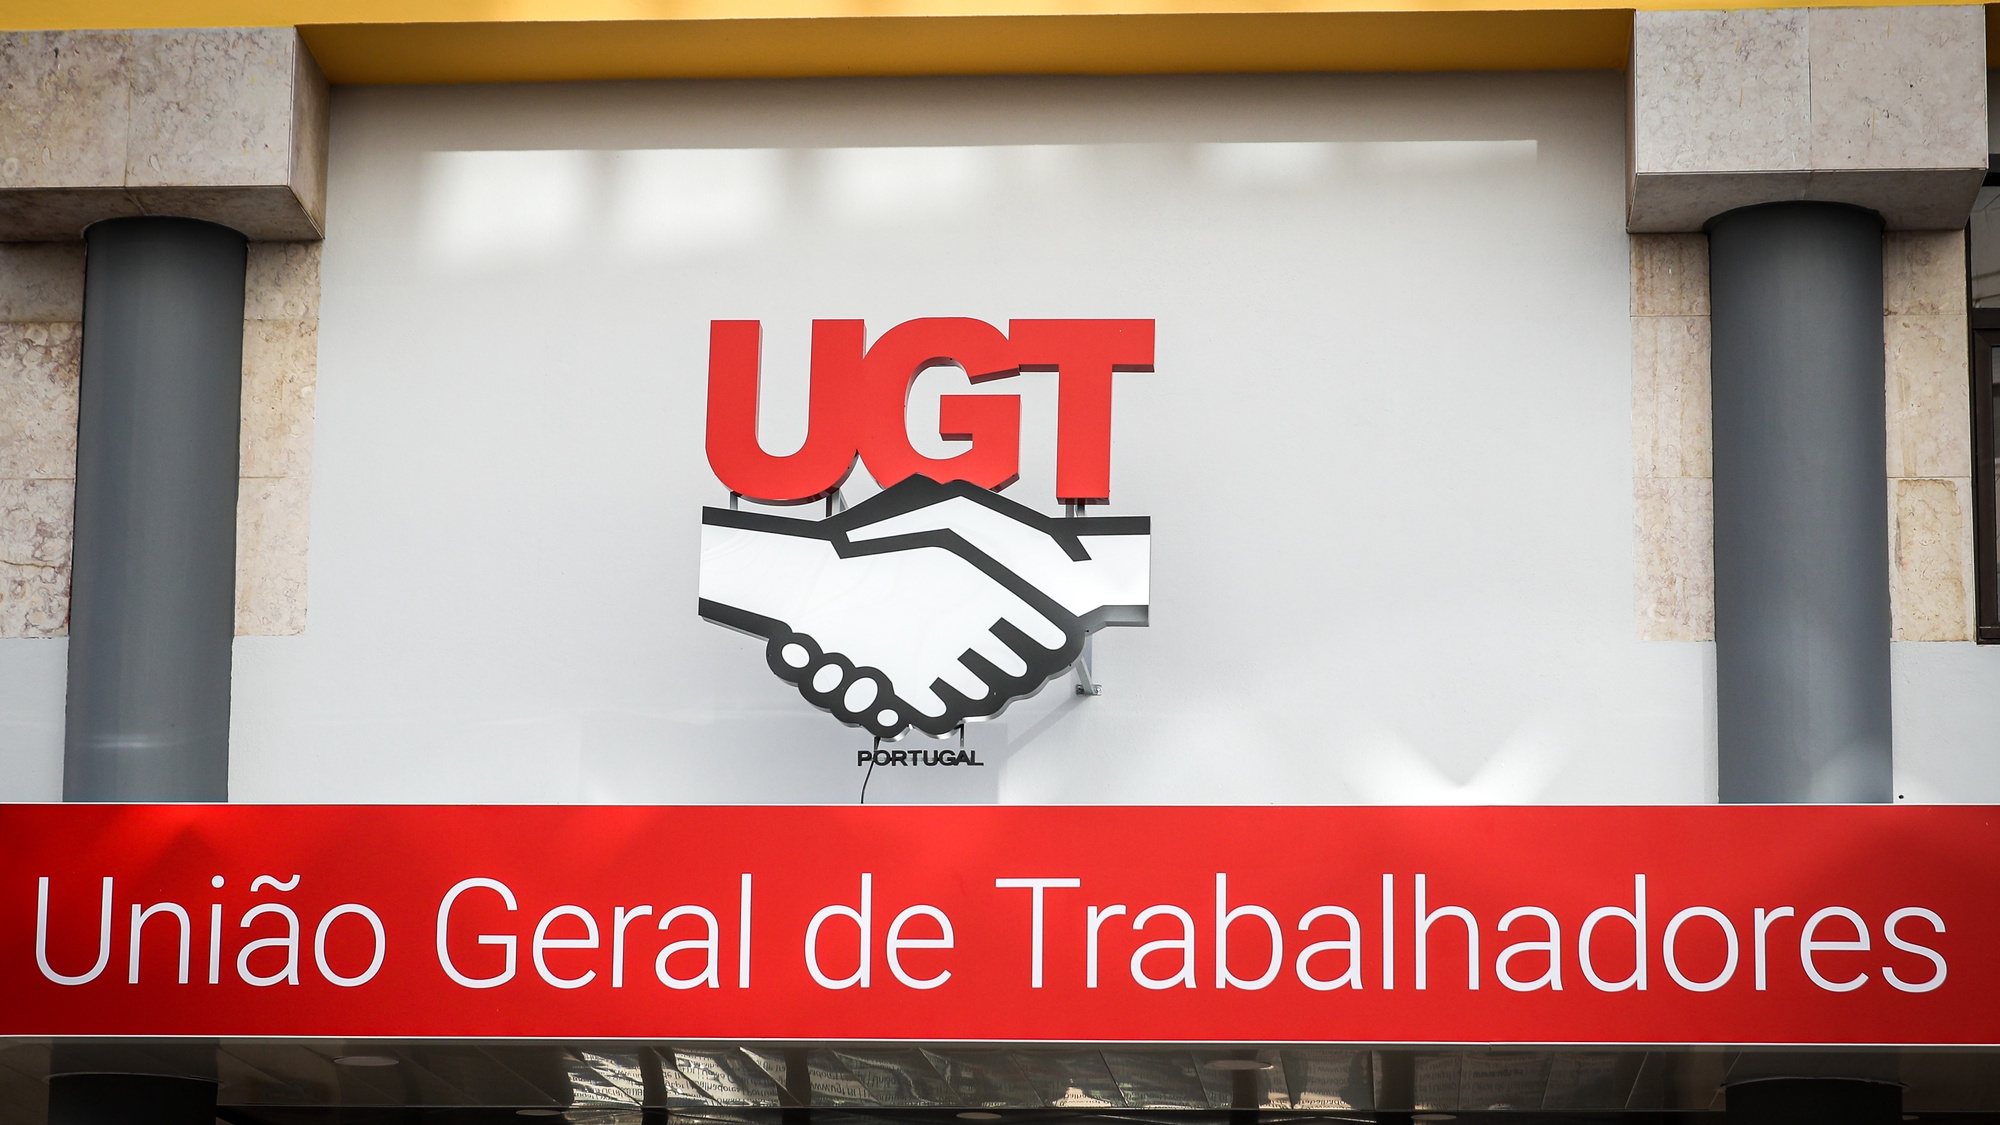 Logótipo da União Geral de Trabalhadores (UGT), Lisboa, 05 de novembro de 2021. ANTÓNIO COTRIM/LUSA